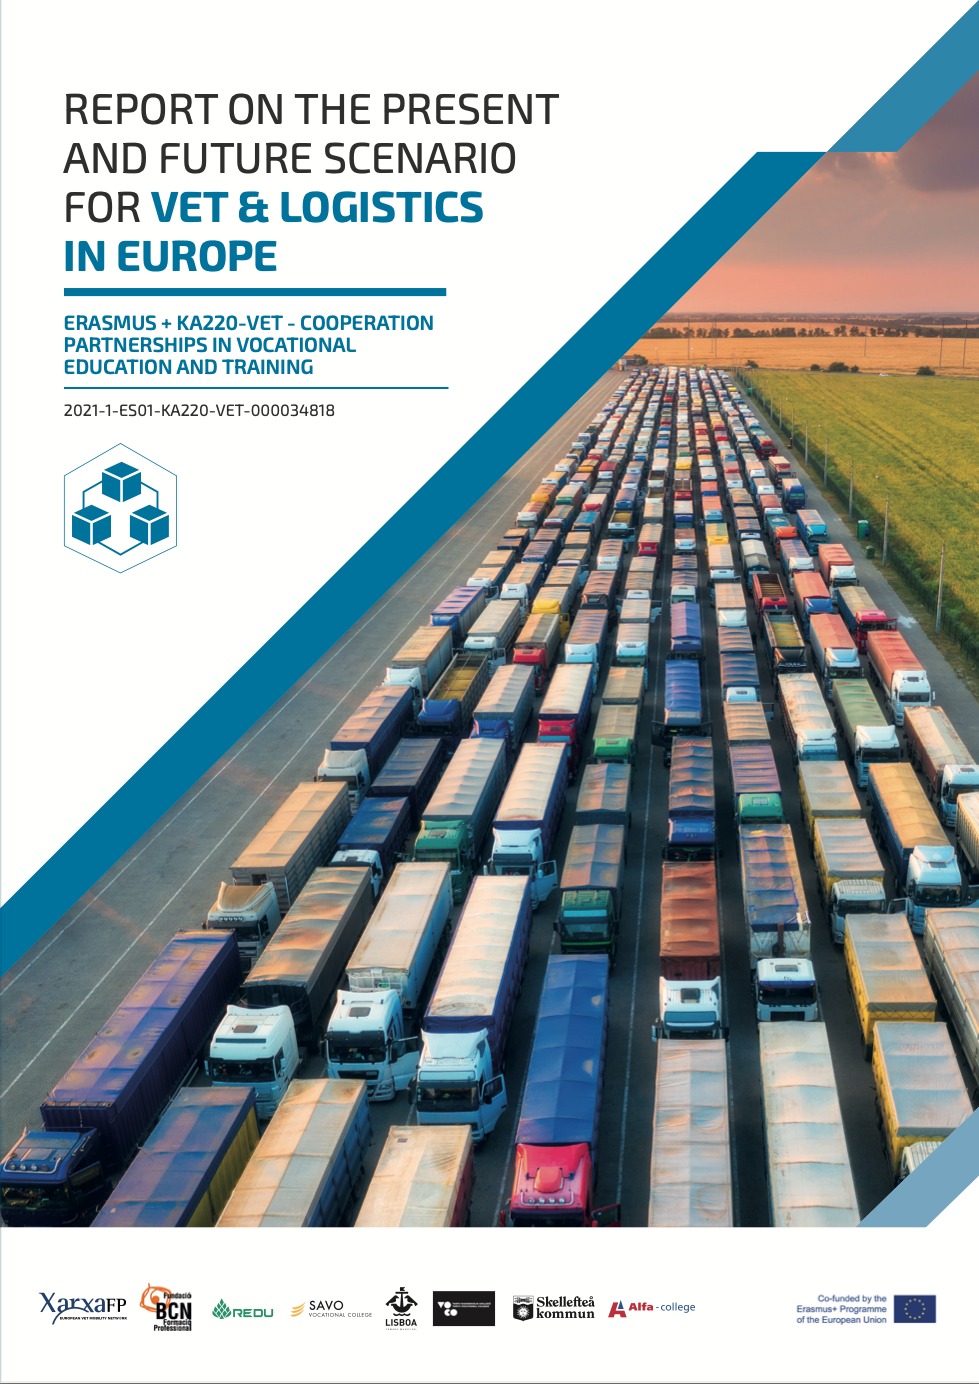 L’estat actual i l’escenari futur de la logística i l’FP a Europa